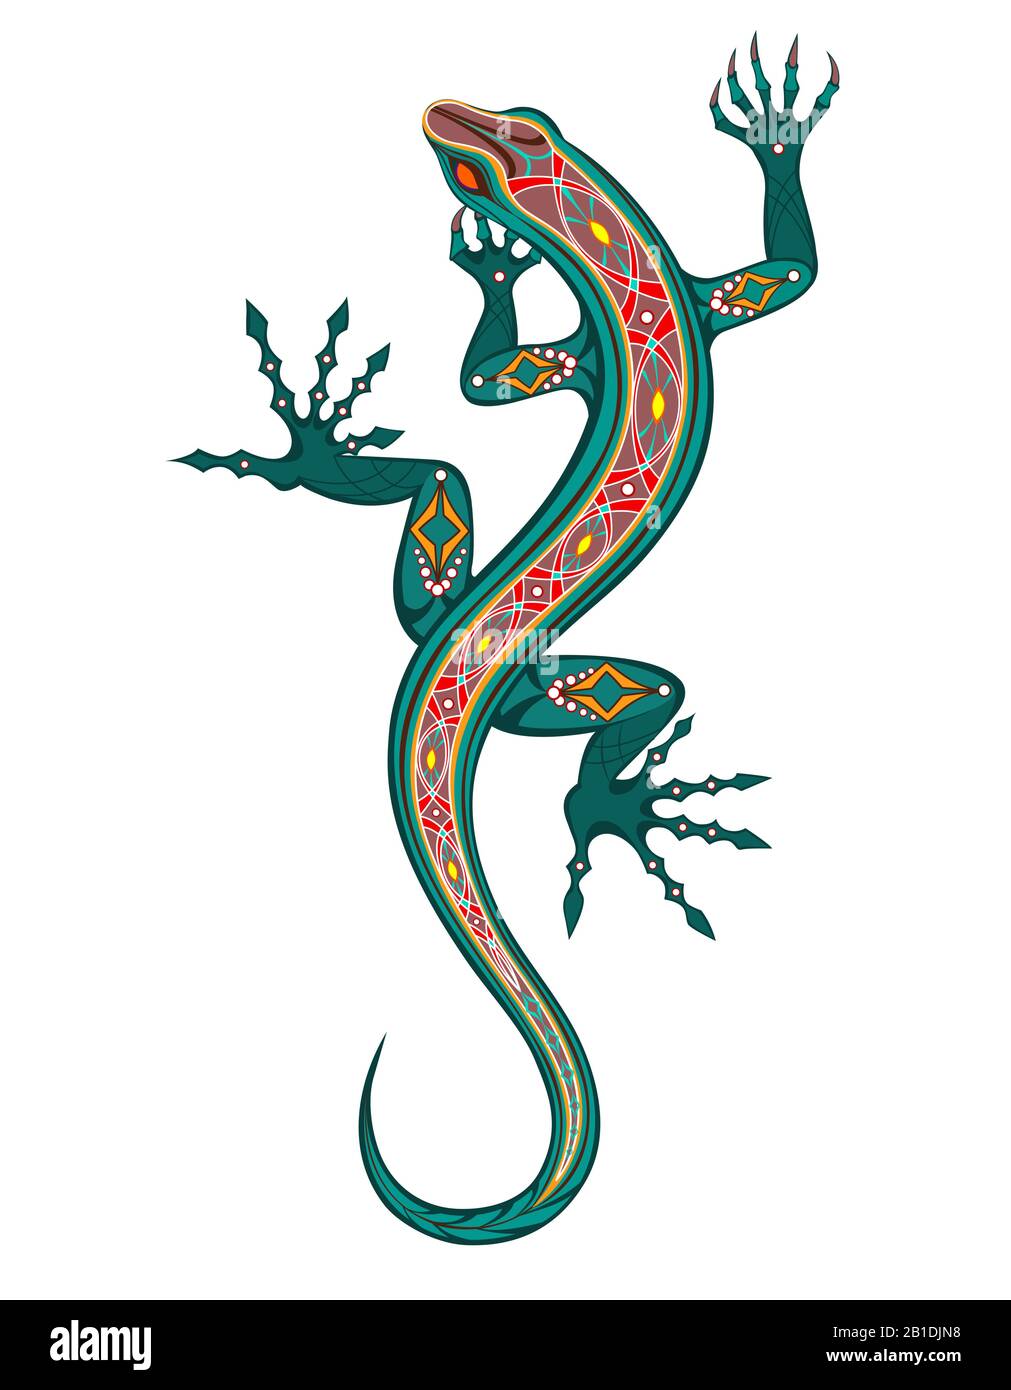 Motivi geometrici, artistici, esotici, luminosi lizard, dipinti in verde e rosso su sfondo bianco. Stile tatuaggio. Illustrazione Vettoriale